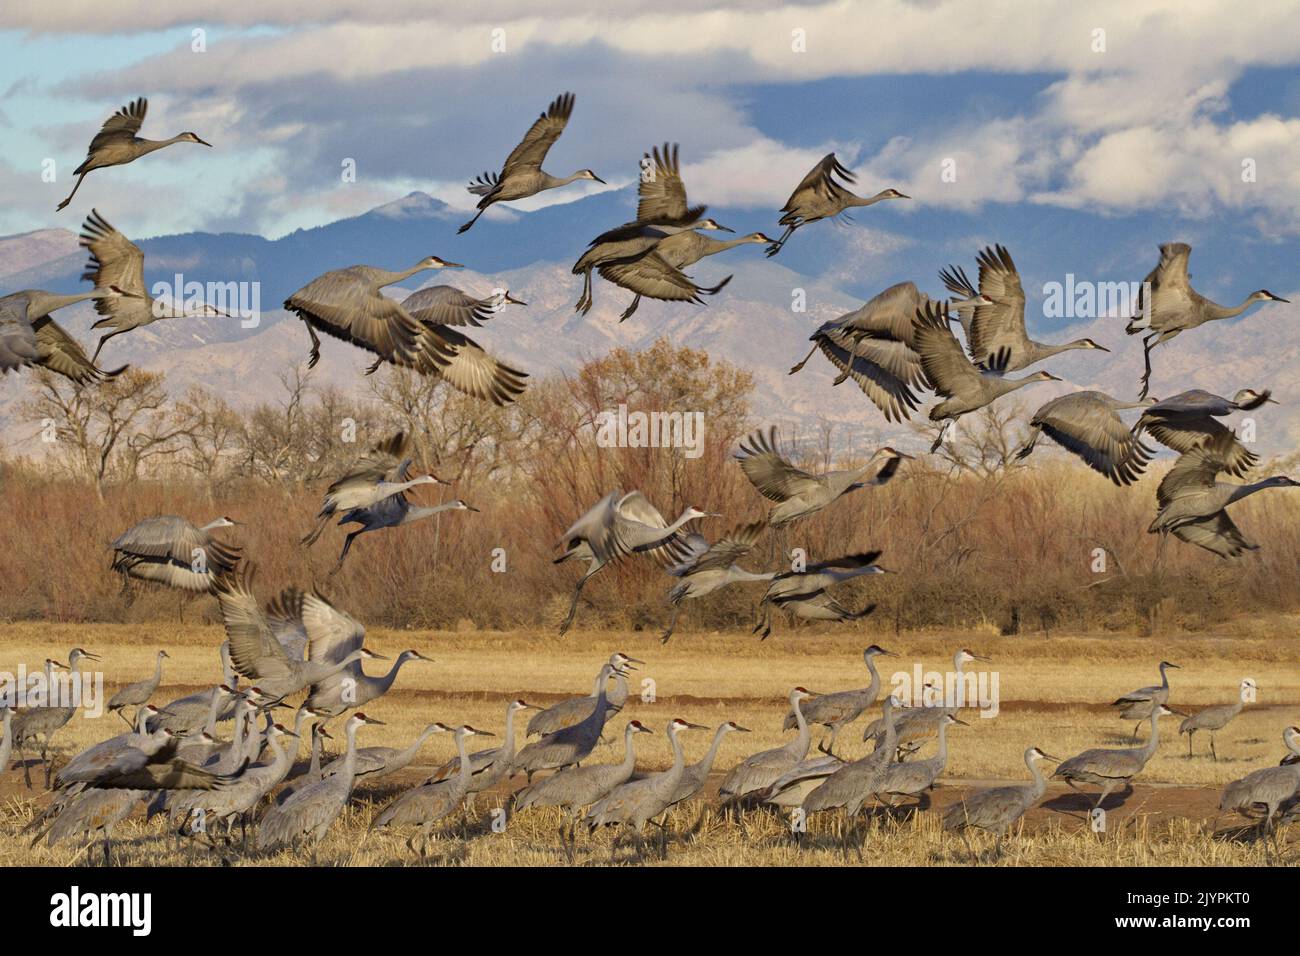 Les grues du Canada sautent et sortent du champ à la réserve d'animaux de Bernardo, une zone de gestion de la sauvagine, près de Socorro, au Nouveau-Mexique, aux États-Unis Banque D'Images